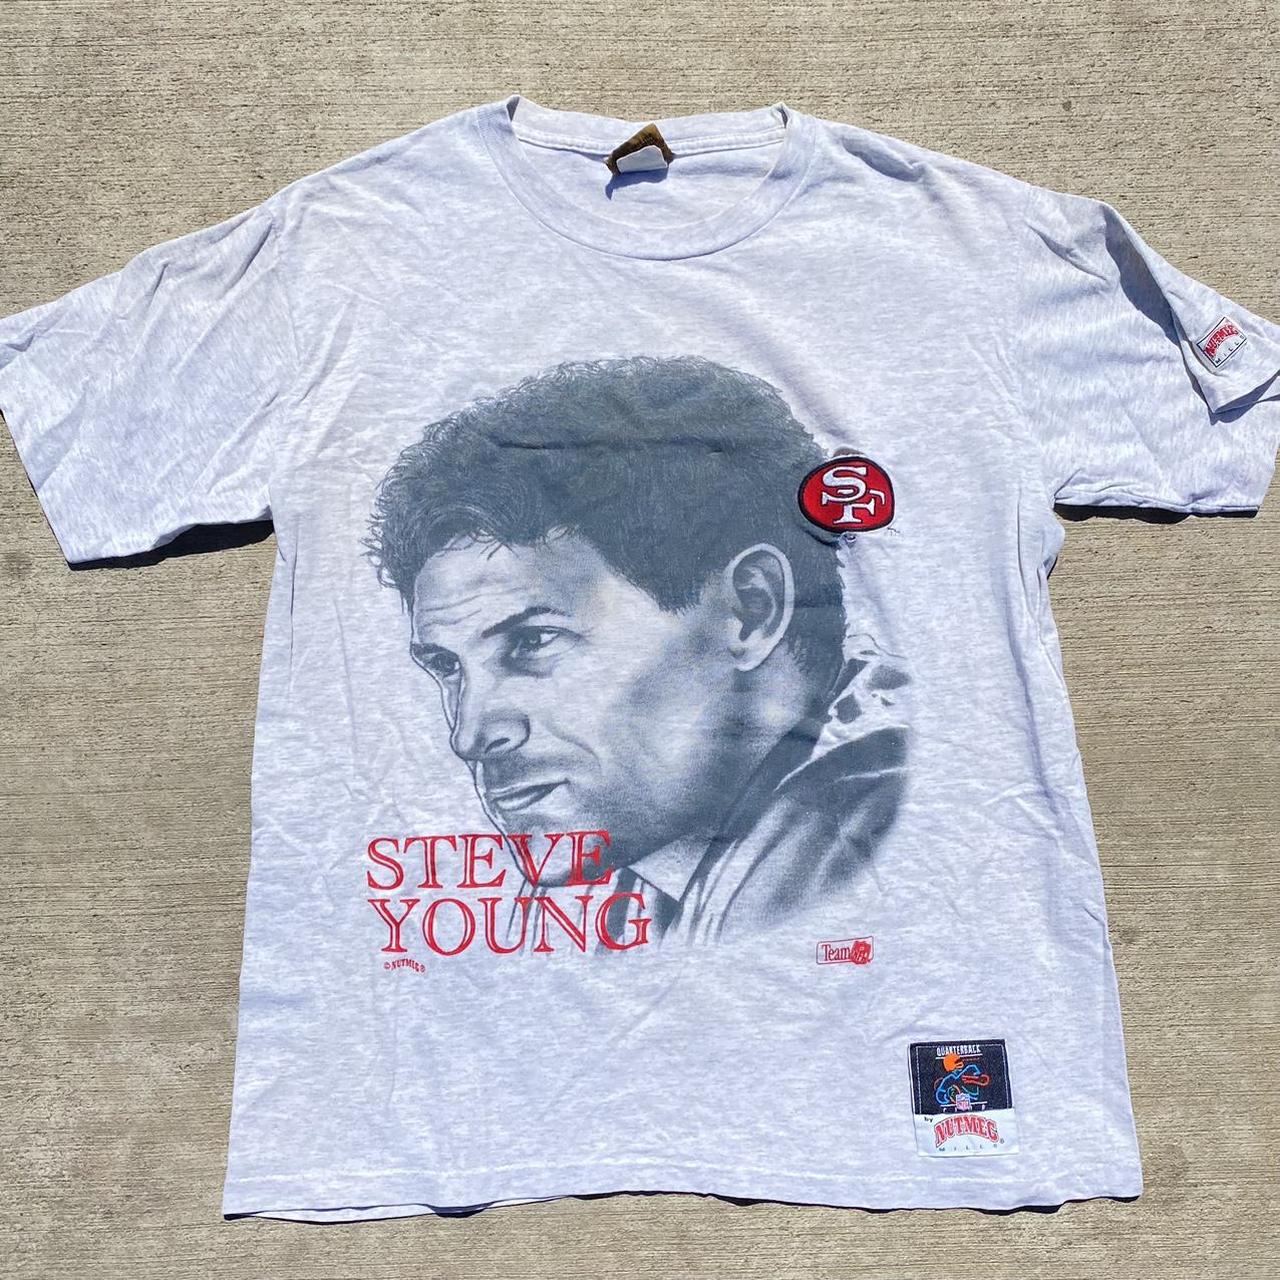 steve young t shirt